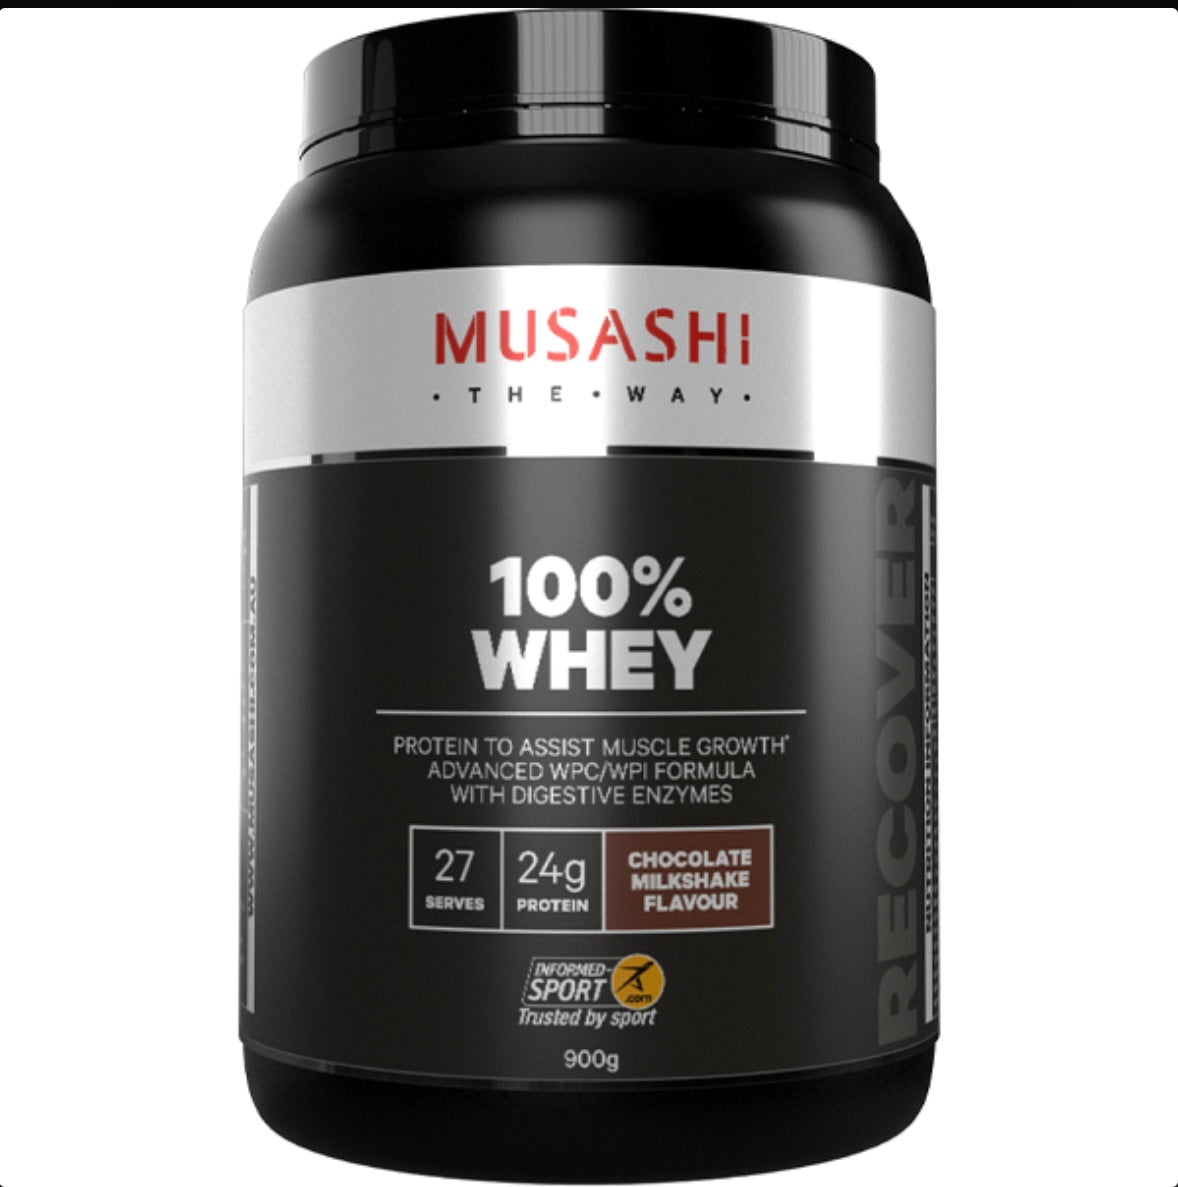 MUSASHI 100% WHEY Protein Powder - Choclate